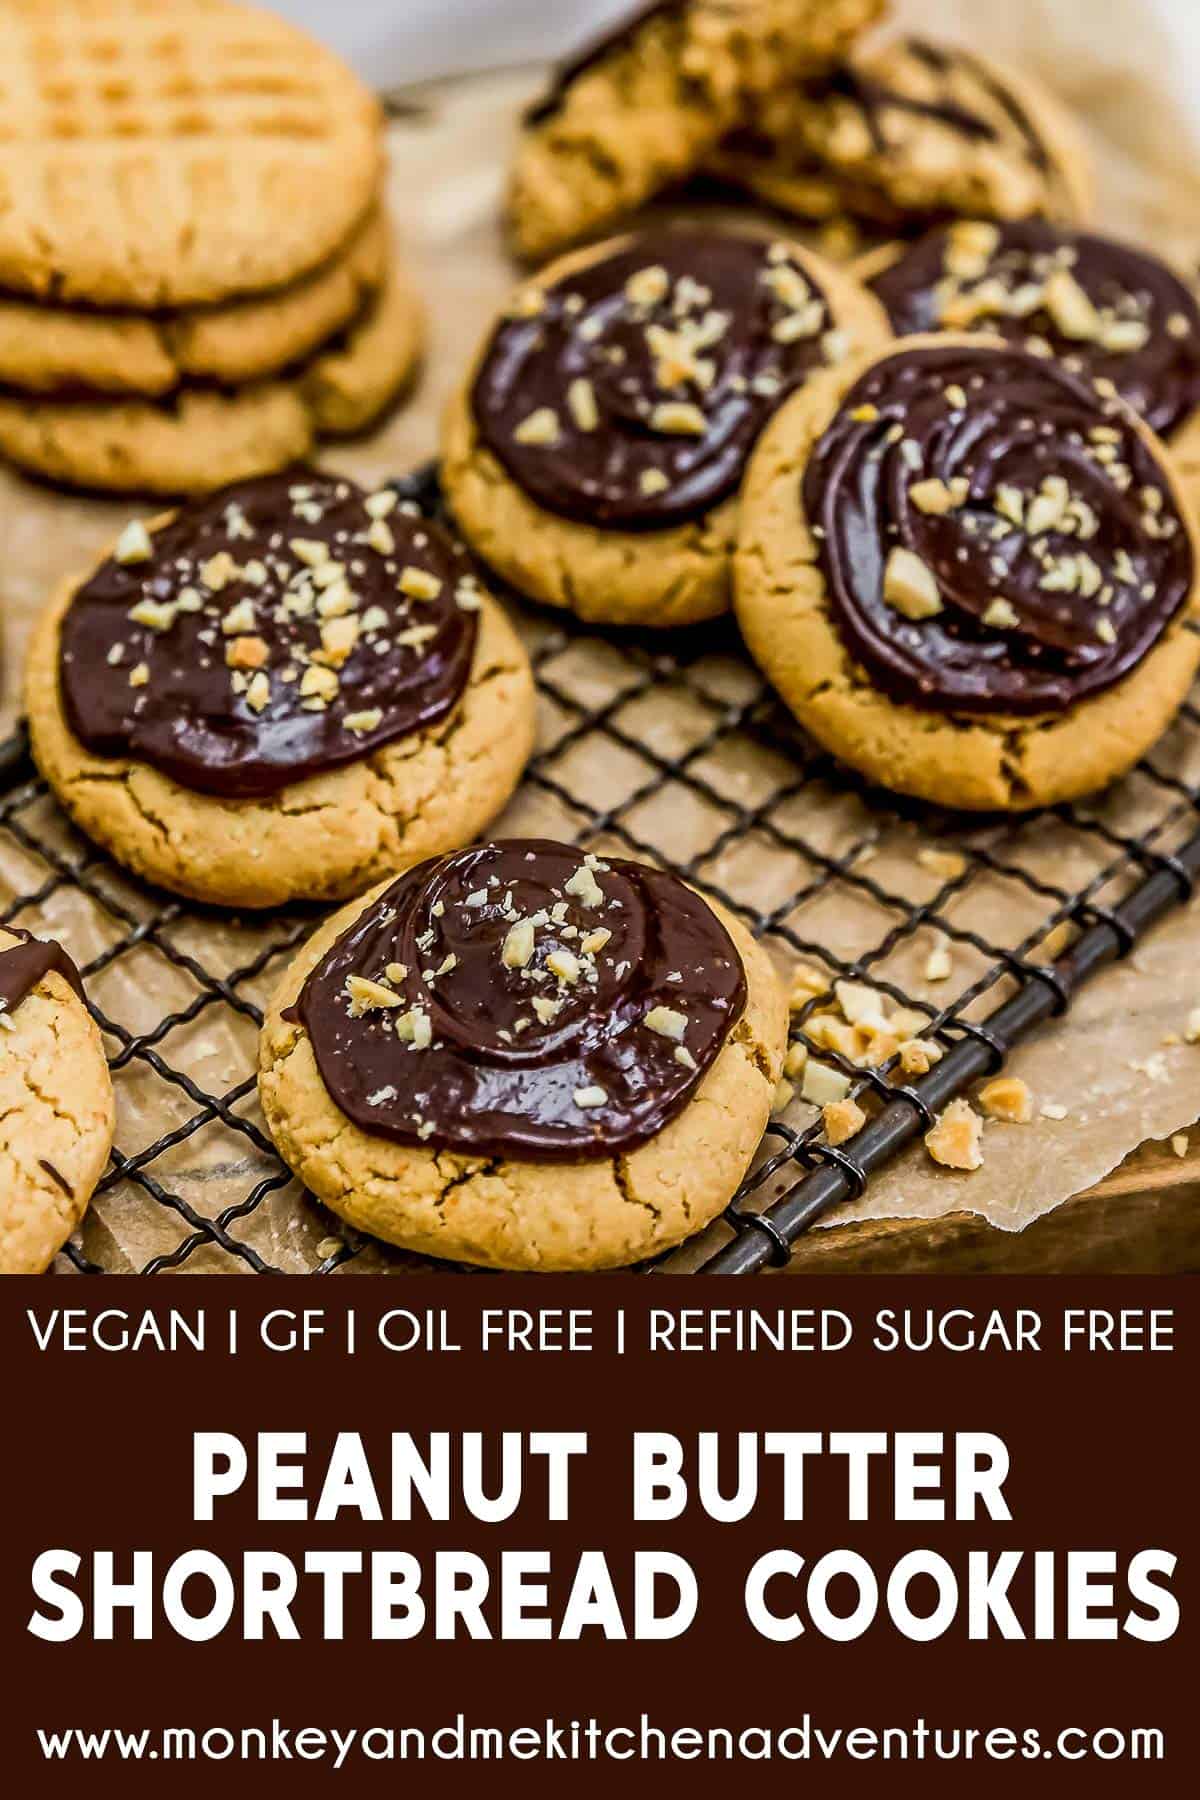 Peanut Butter Shortbread Cookies with text description